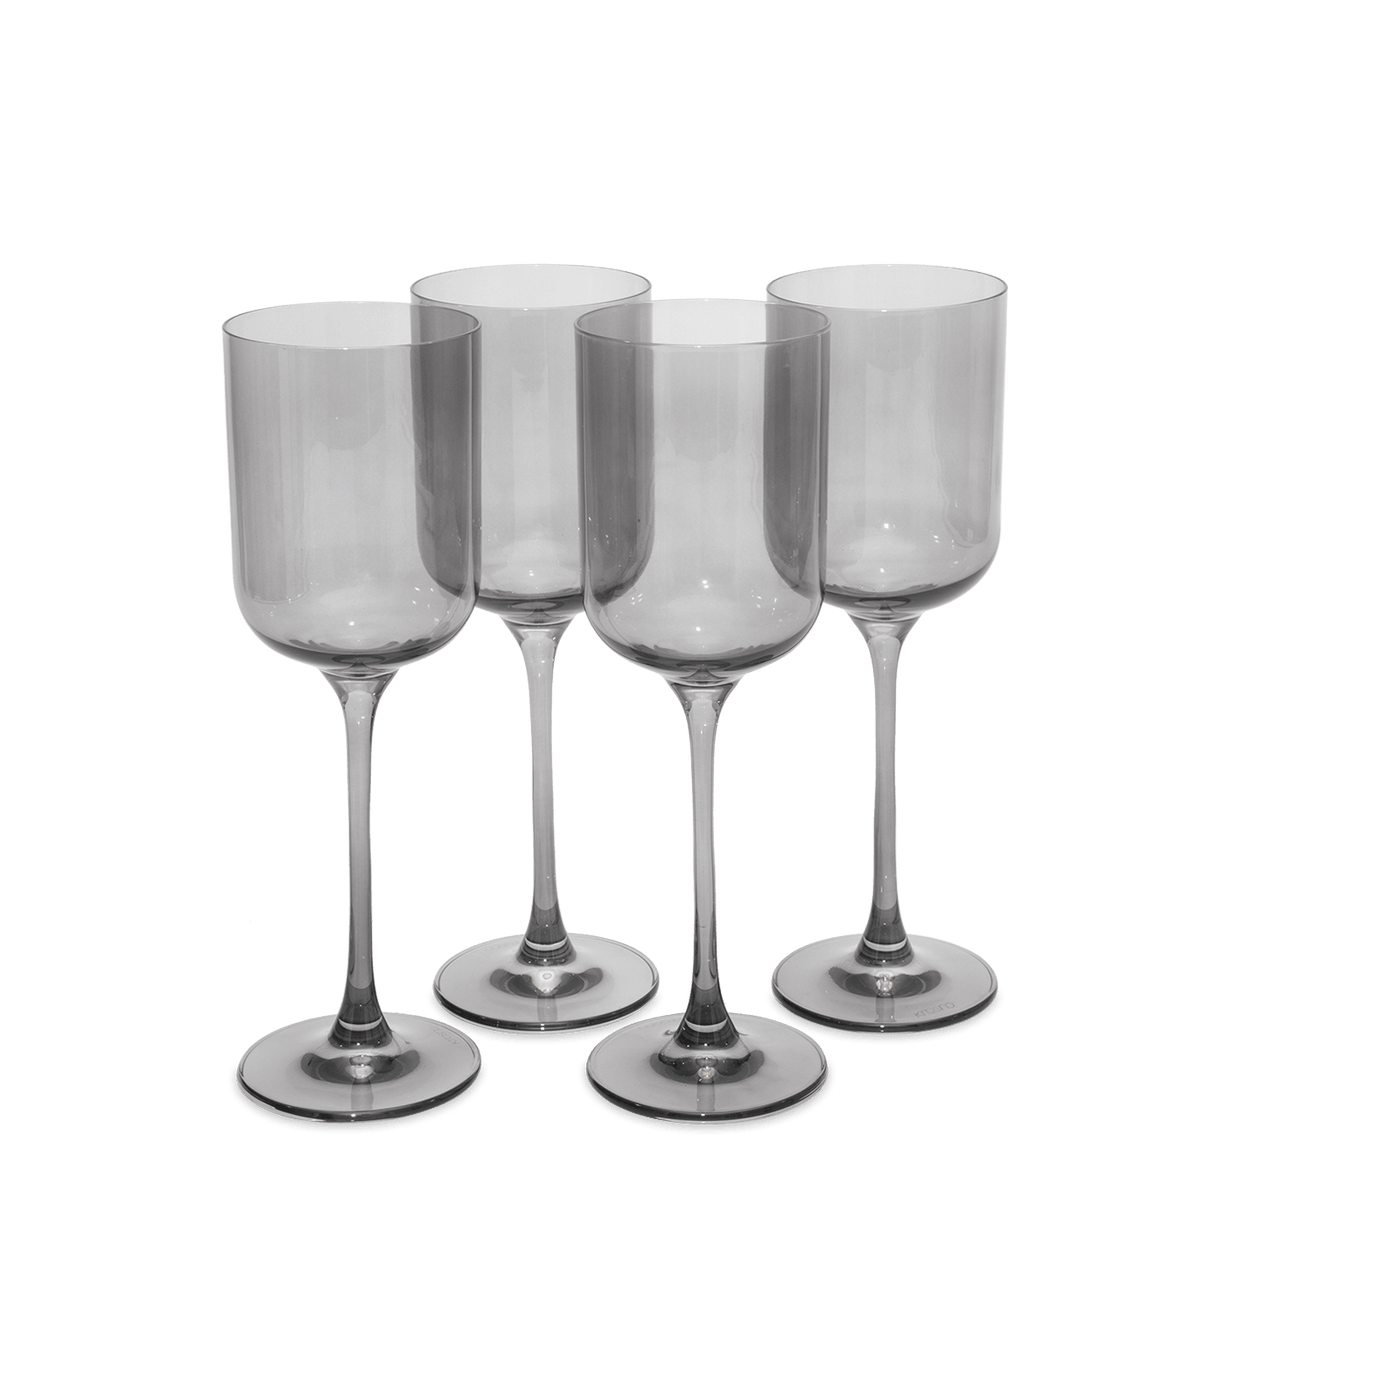 Soho Set of 4 Wine Glasses, Charcoal, 350 ml Glasses & Tumblers sazy.com